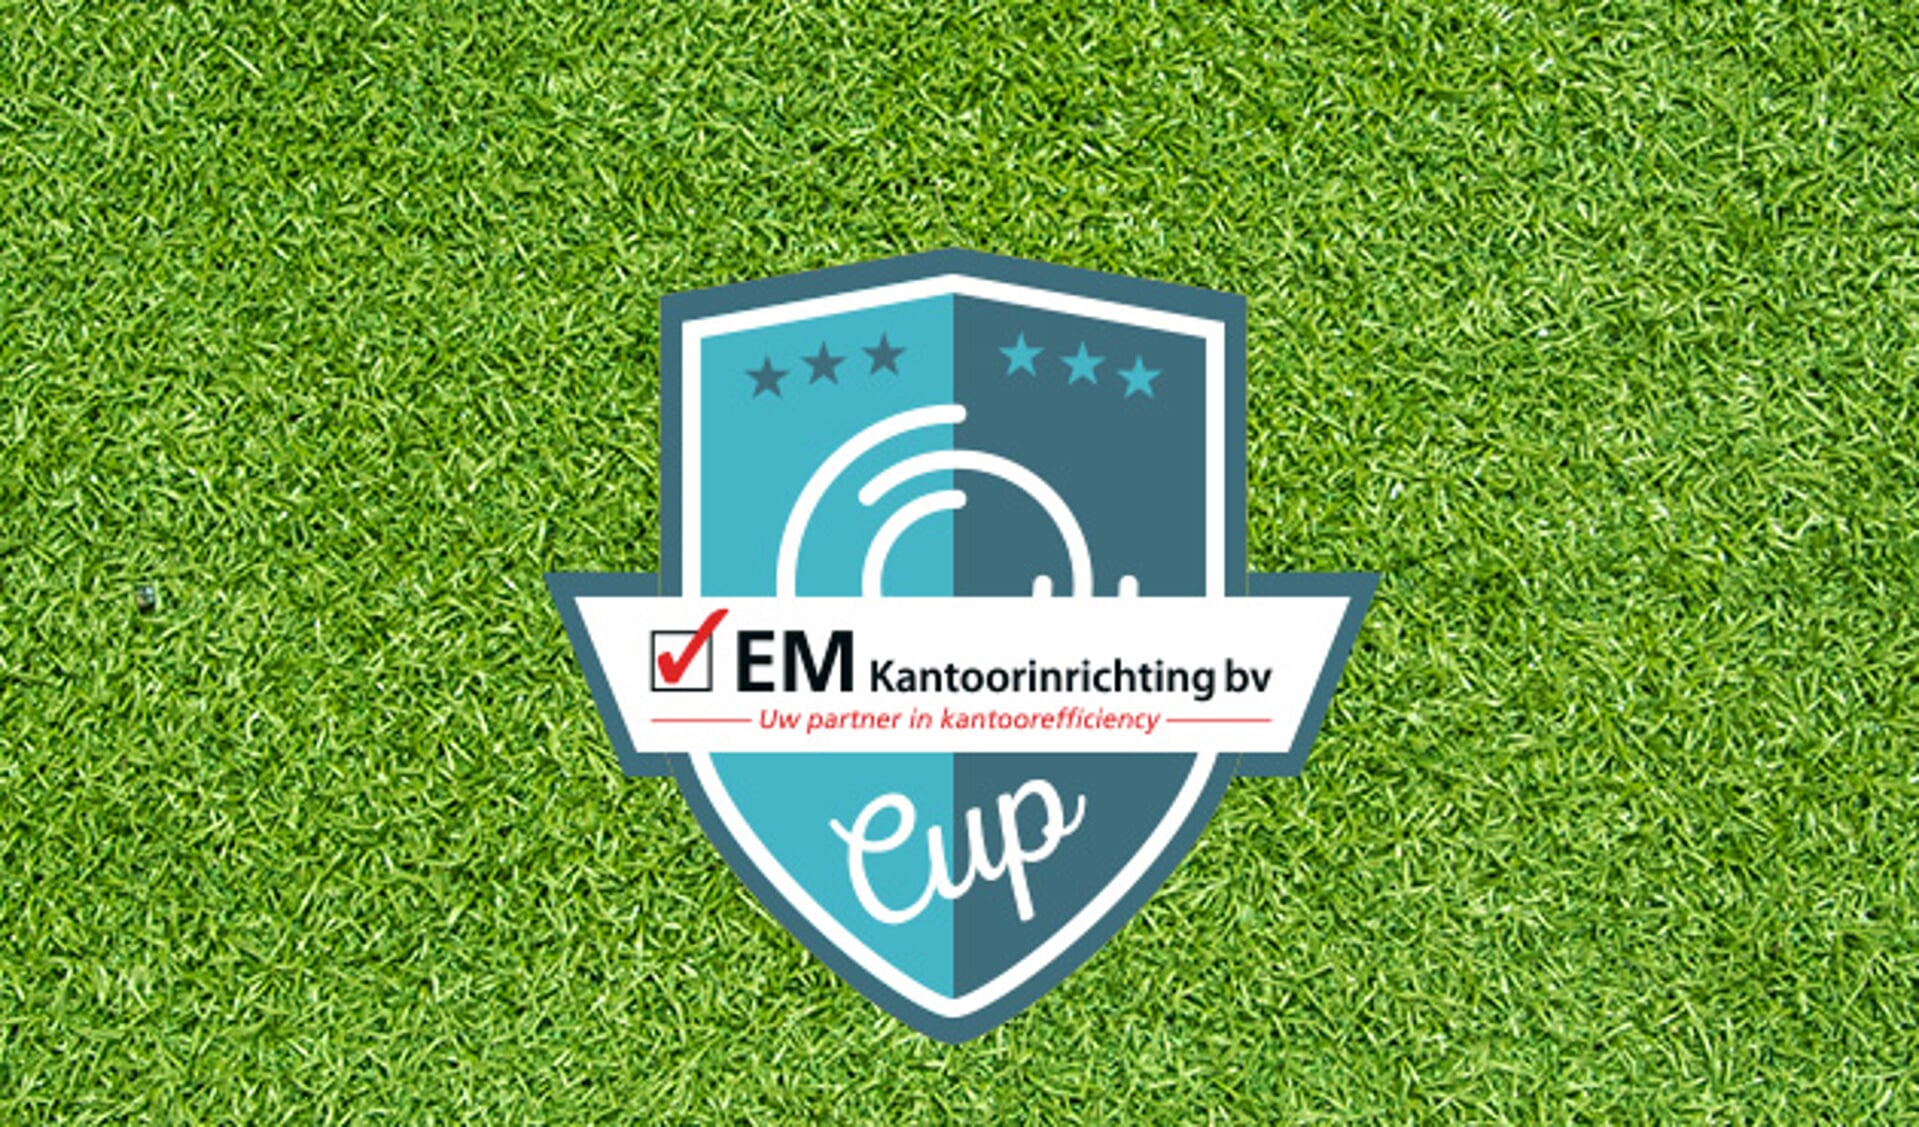 Kozakken Boys 2 naar finale EM Cup, Papendrecht-GJS in halve finale